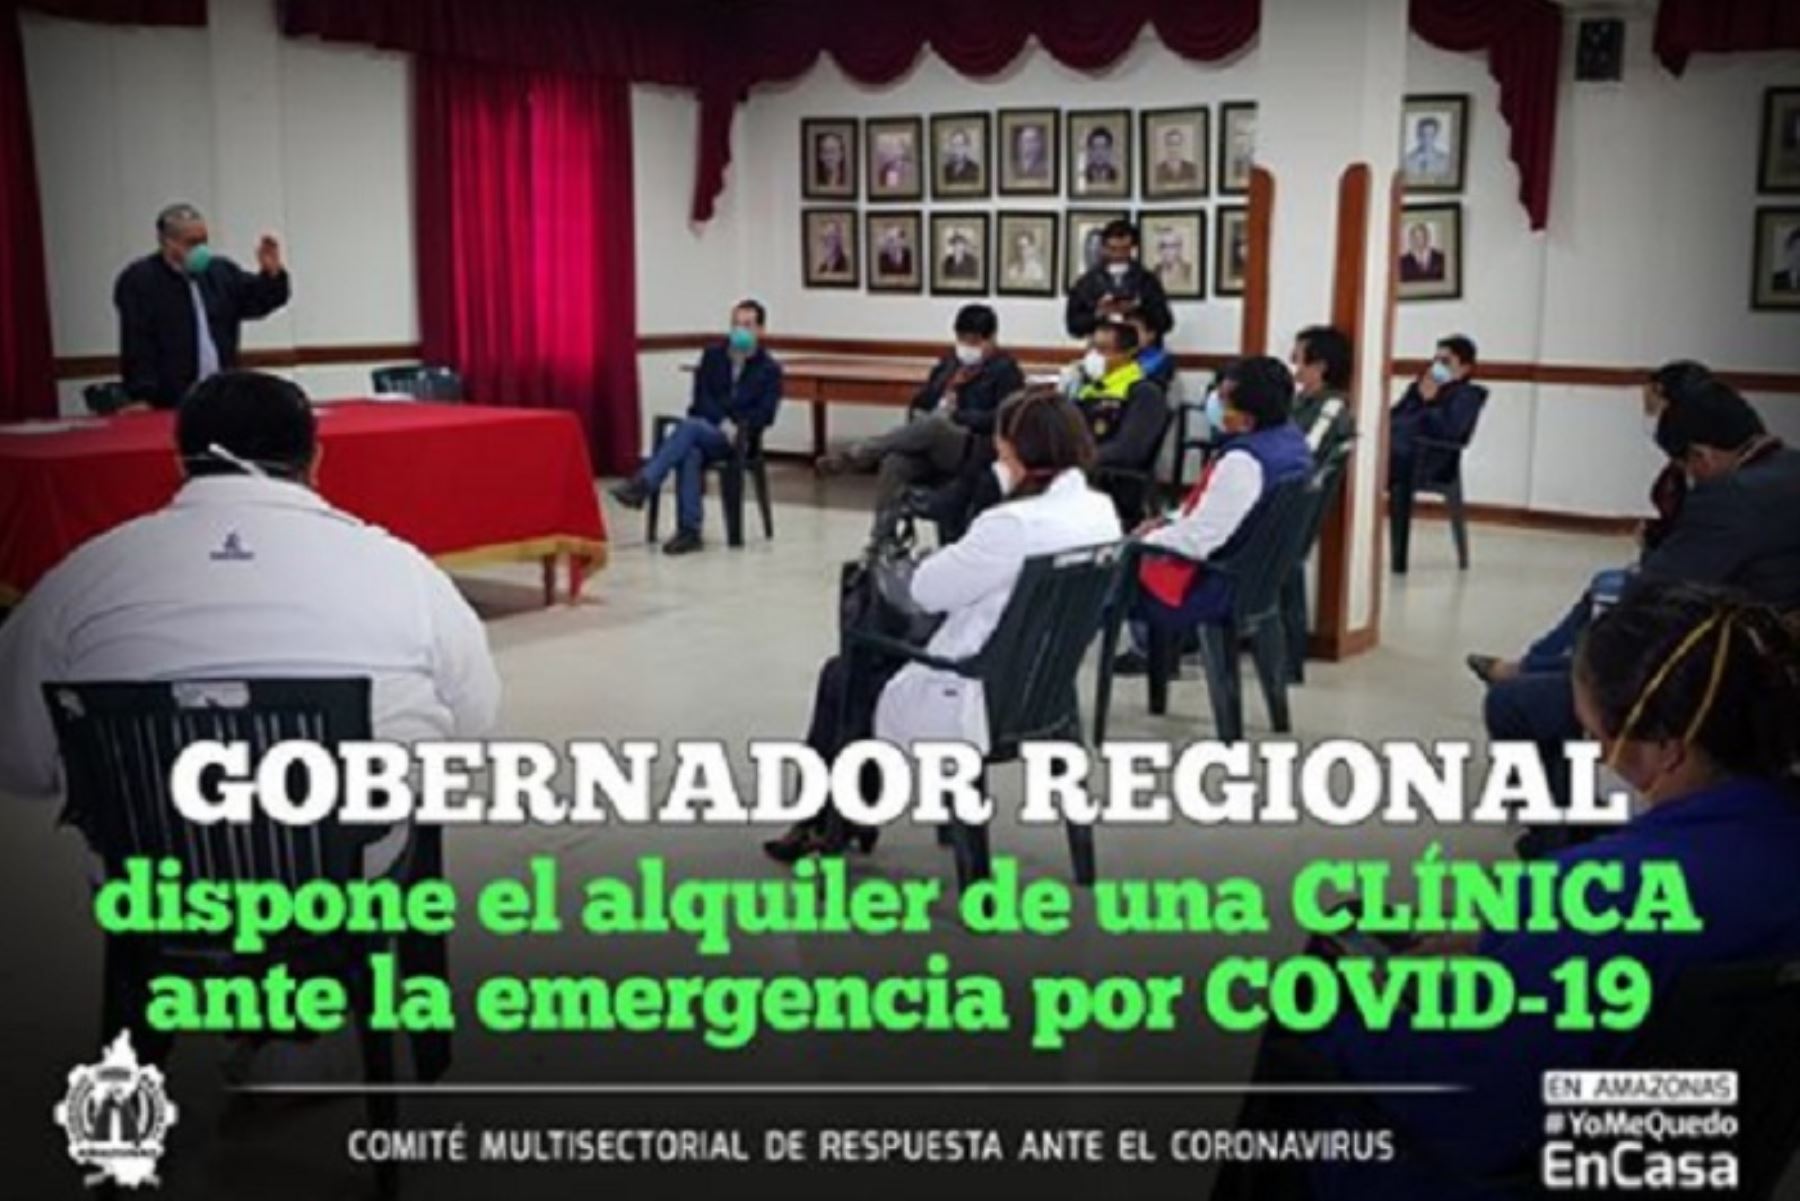 La región Amazonas alquilará clínica para atender pacientes con enfermedades comunes durante la pandemia del coronavirus.